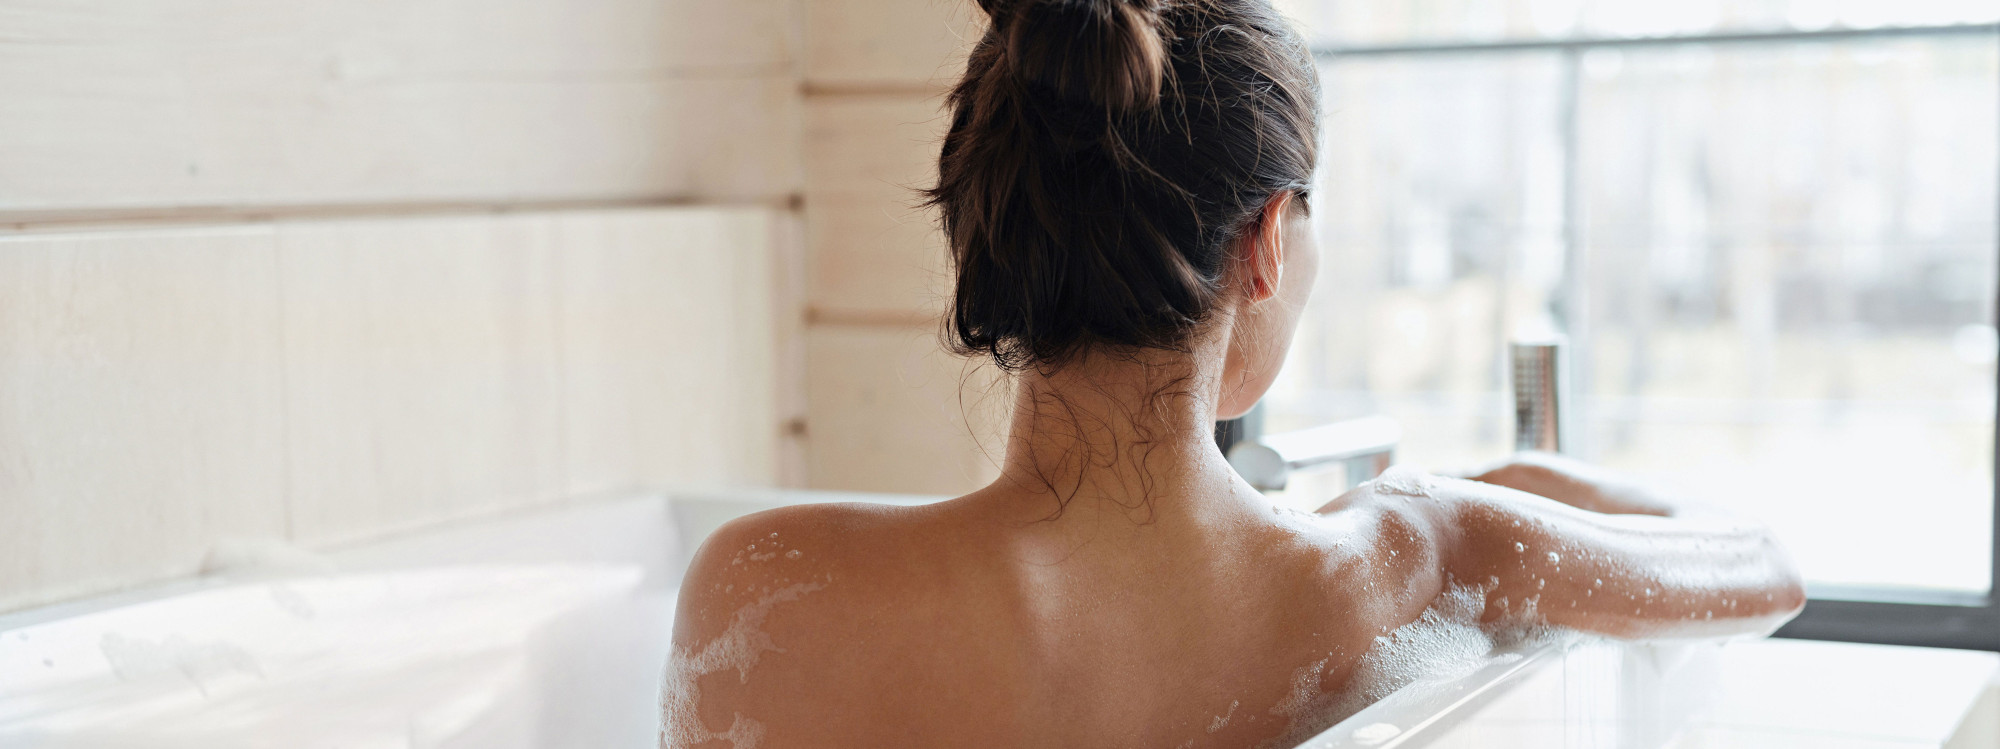 фото девушек в ванне со спины